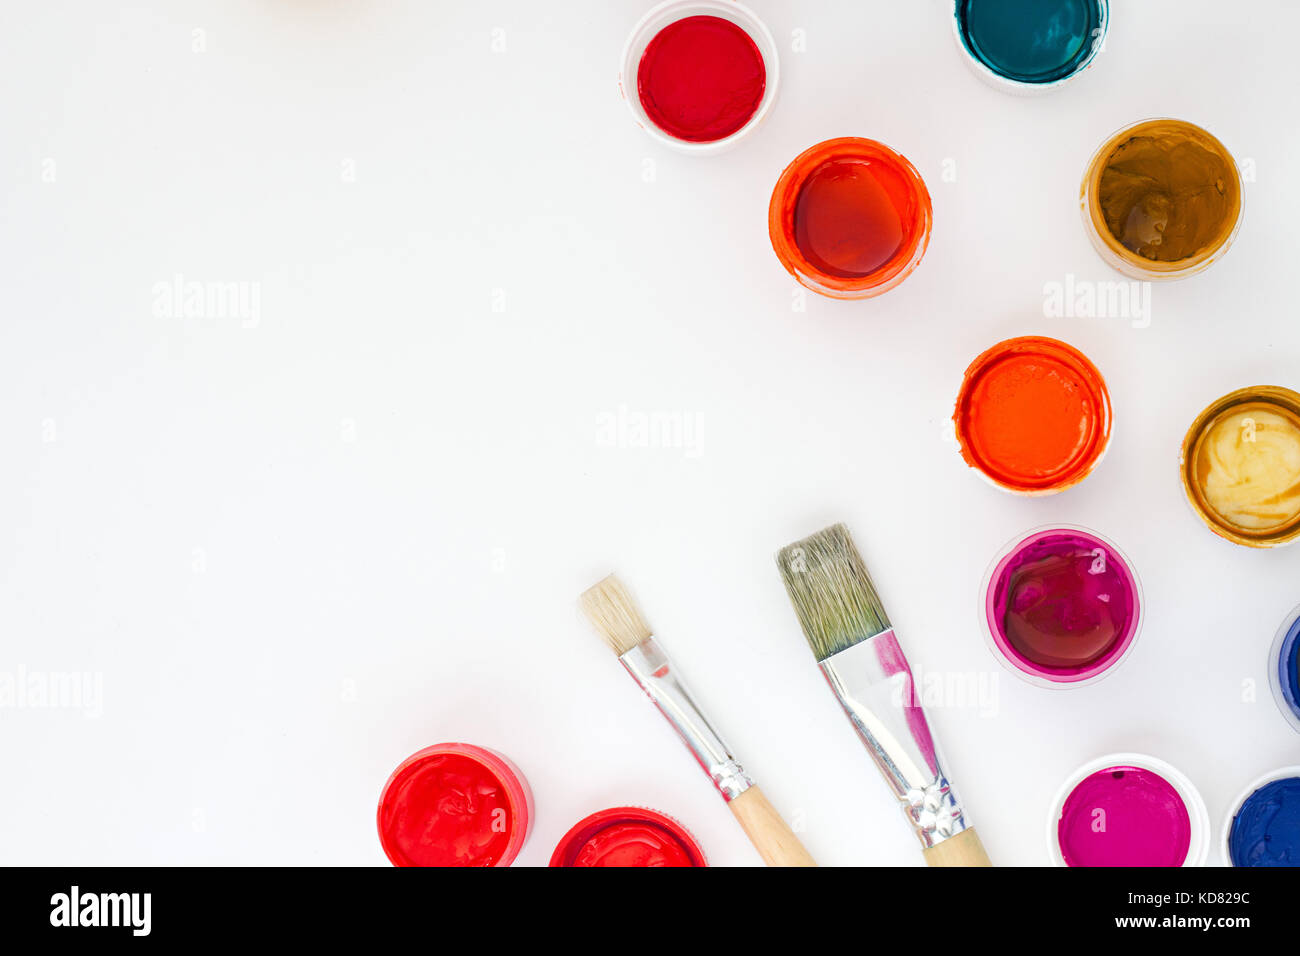 Impostare delle colorate vernici con spazzole sul tavolo bianco backround vista superiore Foto Stock